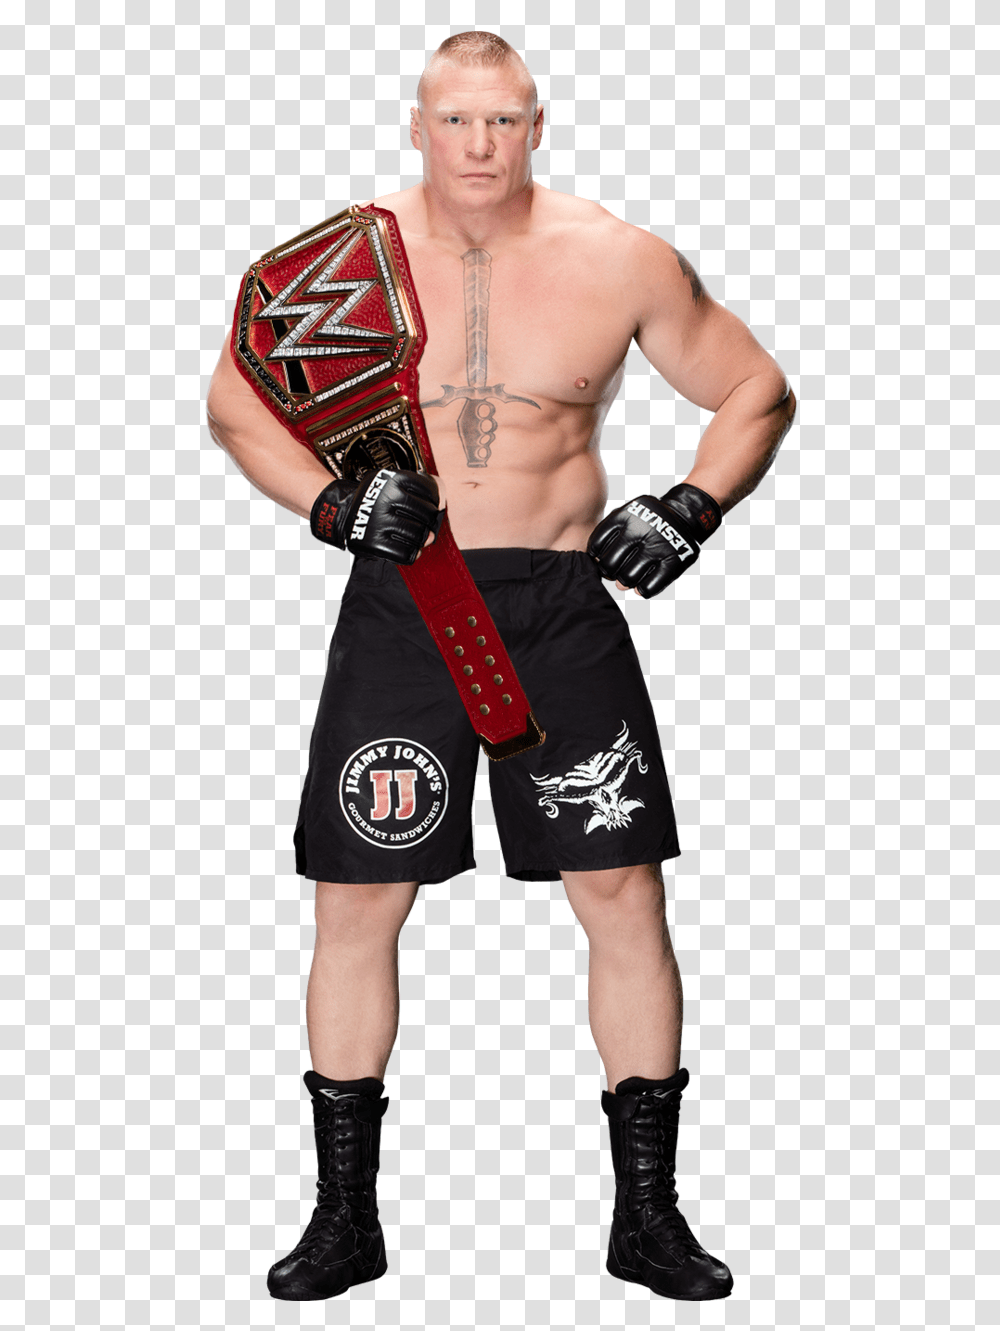 Brock Lesnar Photos New, Skin, Person, Human, Boxing Transparent Png